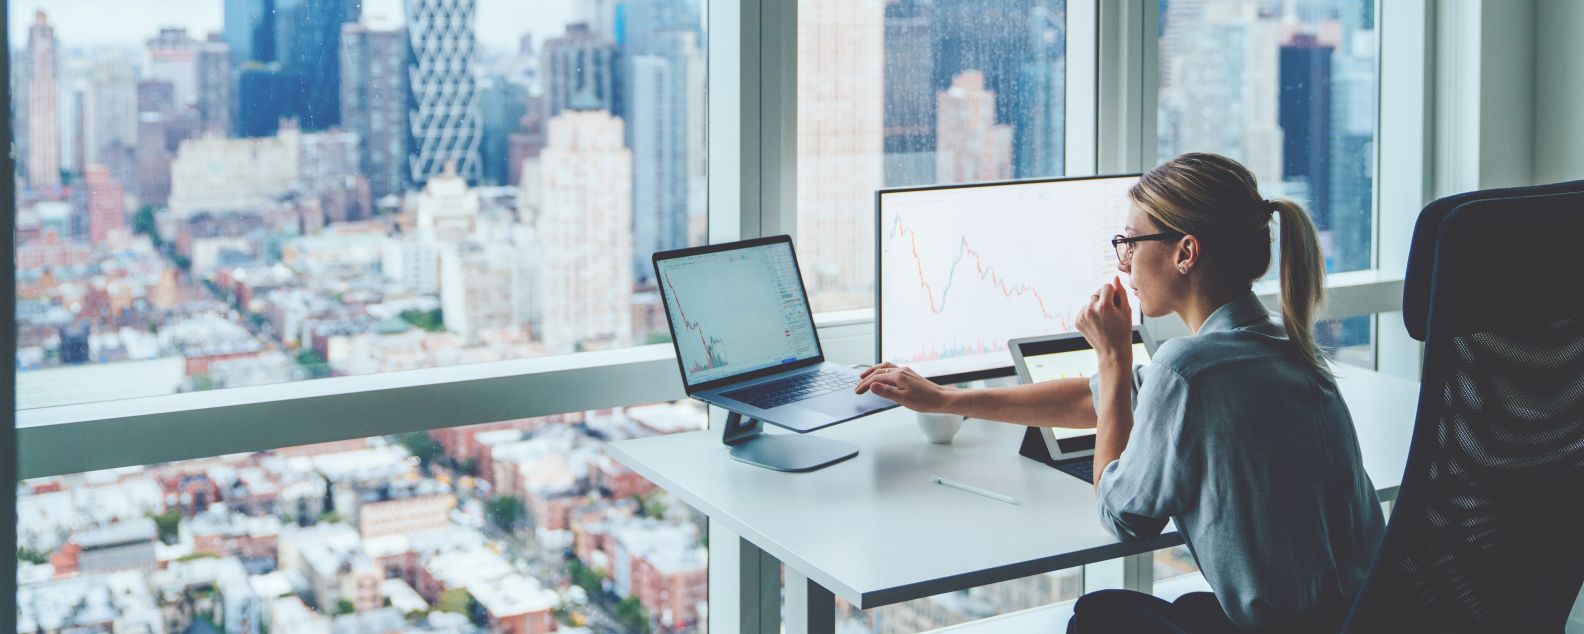 Vista posteriore di una persona seduta al computer desktop dell'ufficio di un grattacielo panoramico con grafici finanziari e statistiche sul monitor